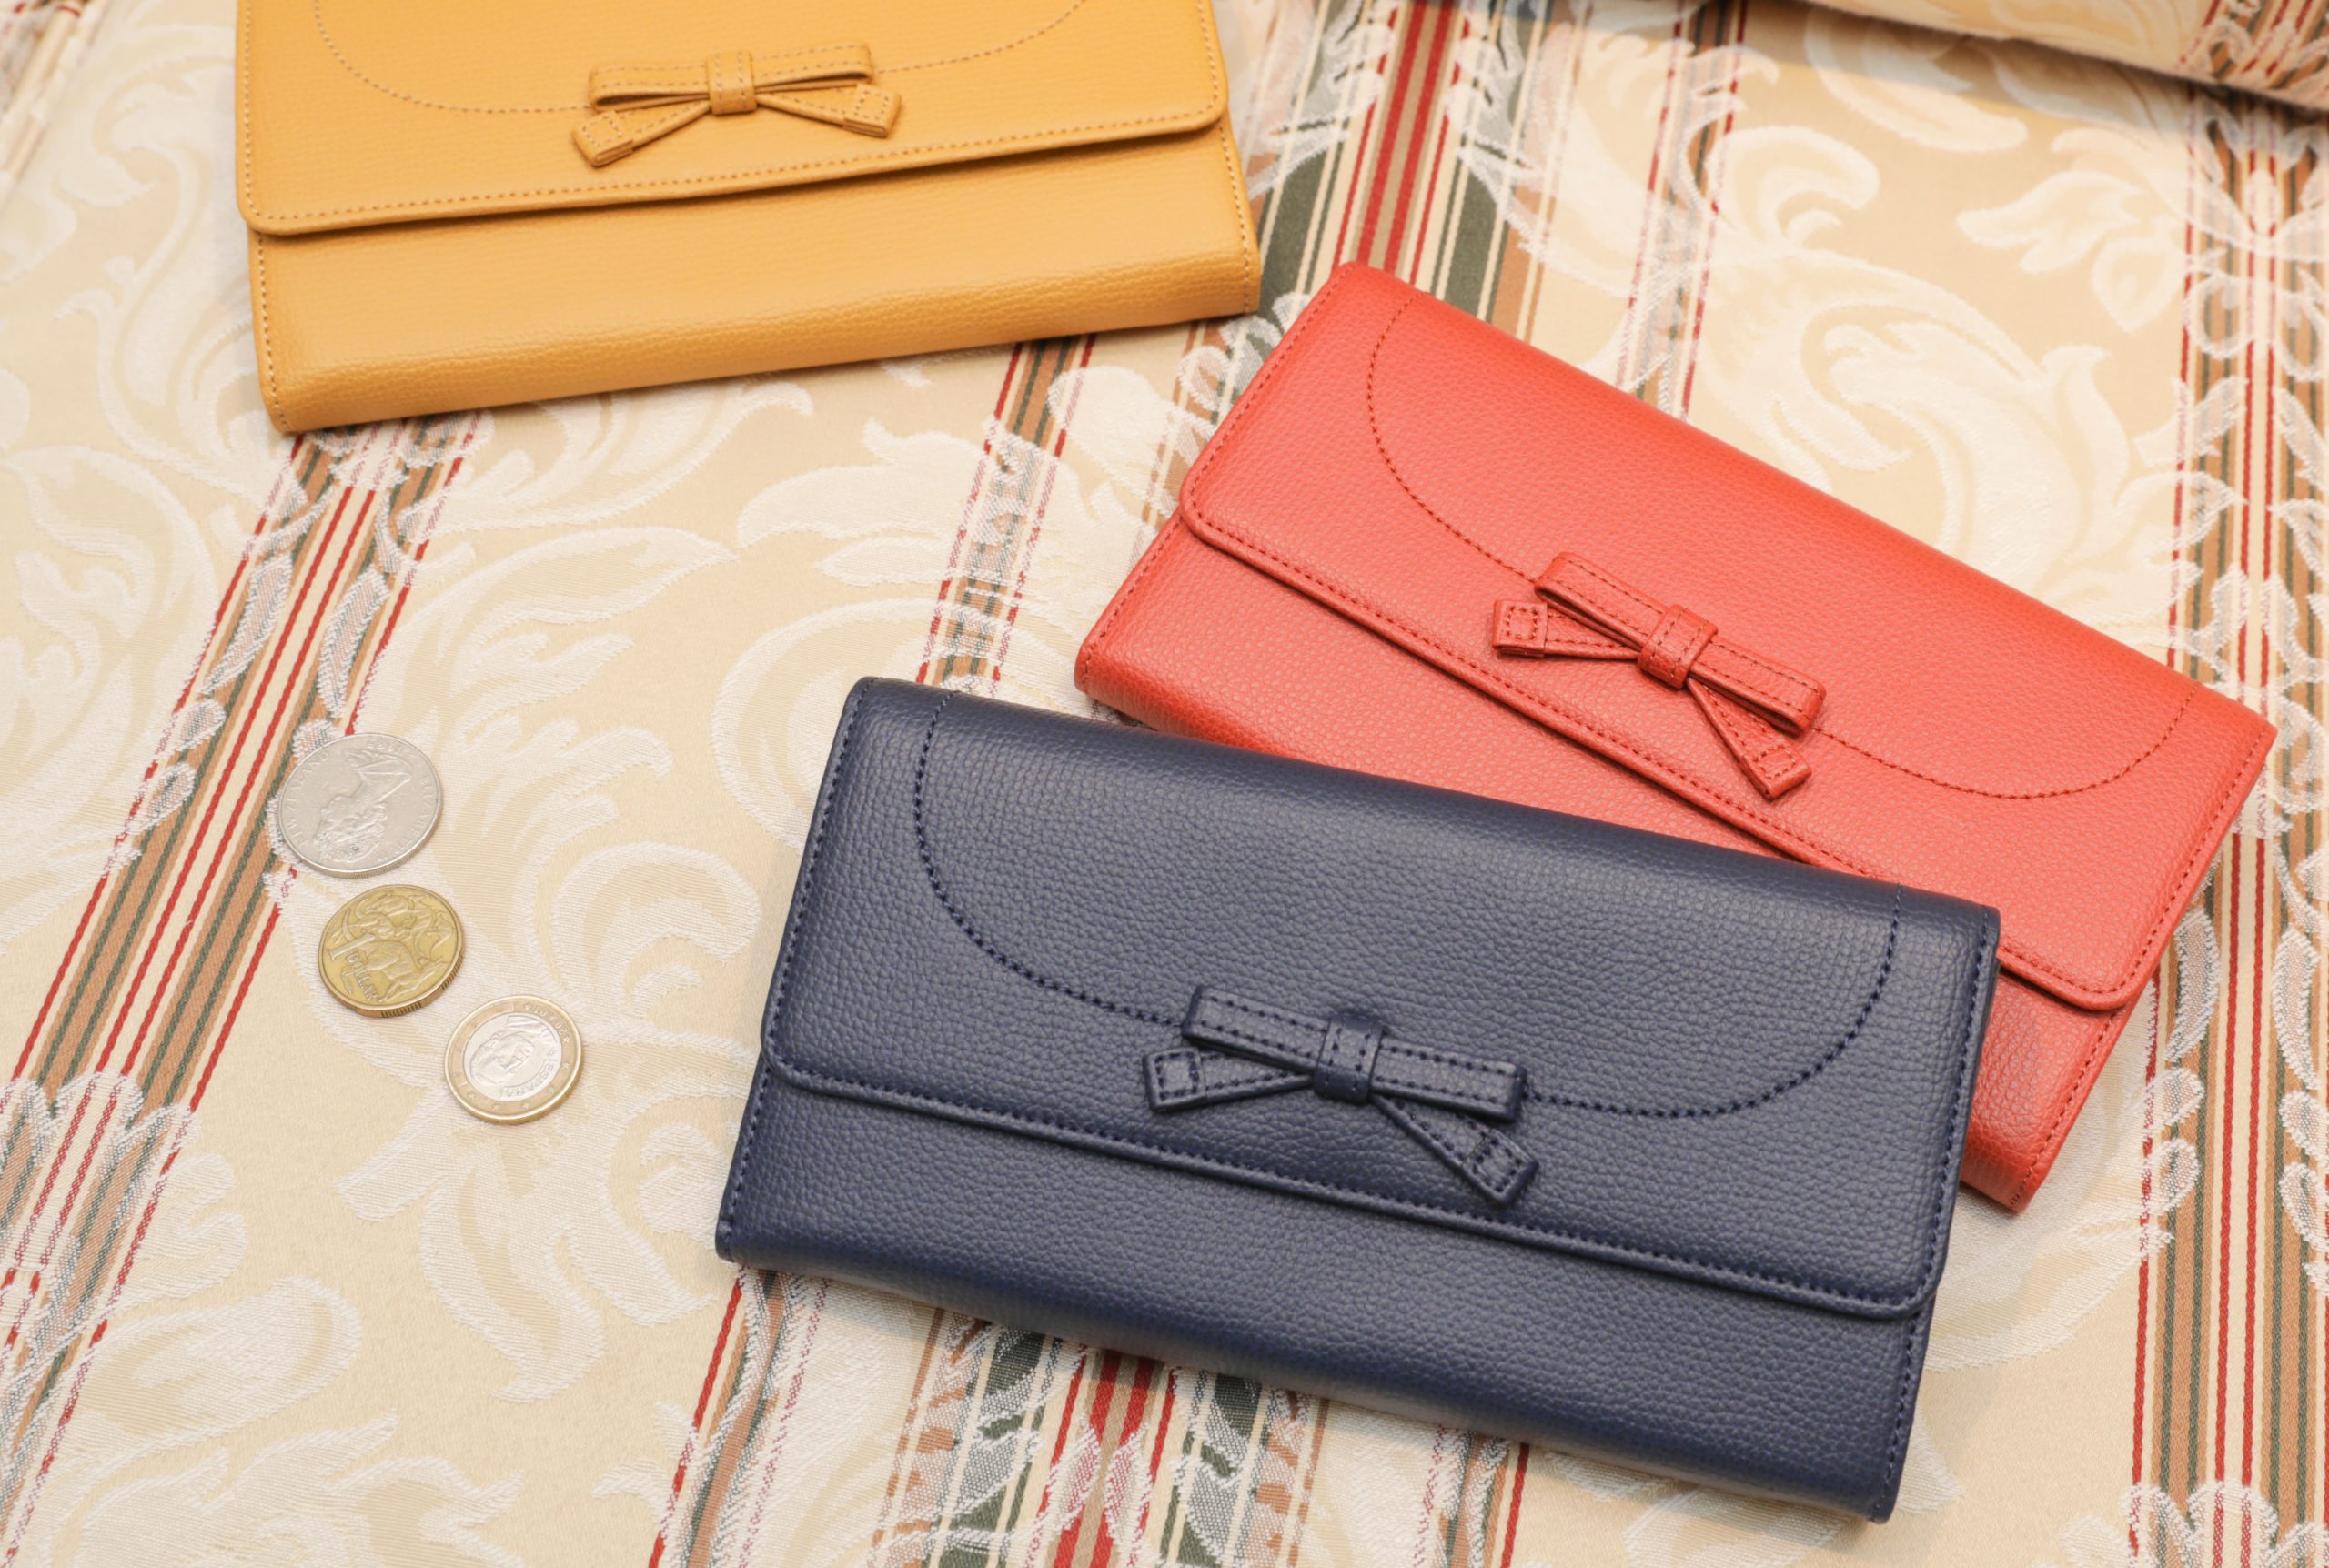 最新版 50代にぴったりのお財布特集 大人の女性を上品に見せる人気のお財布ブランド19選 プレゼントにおすすめのお財布もご紹介します